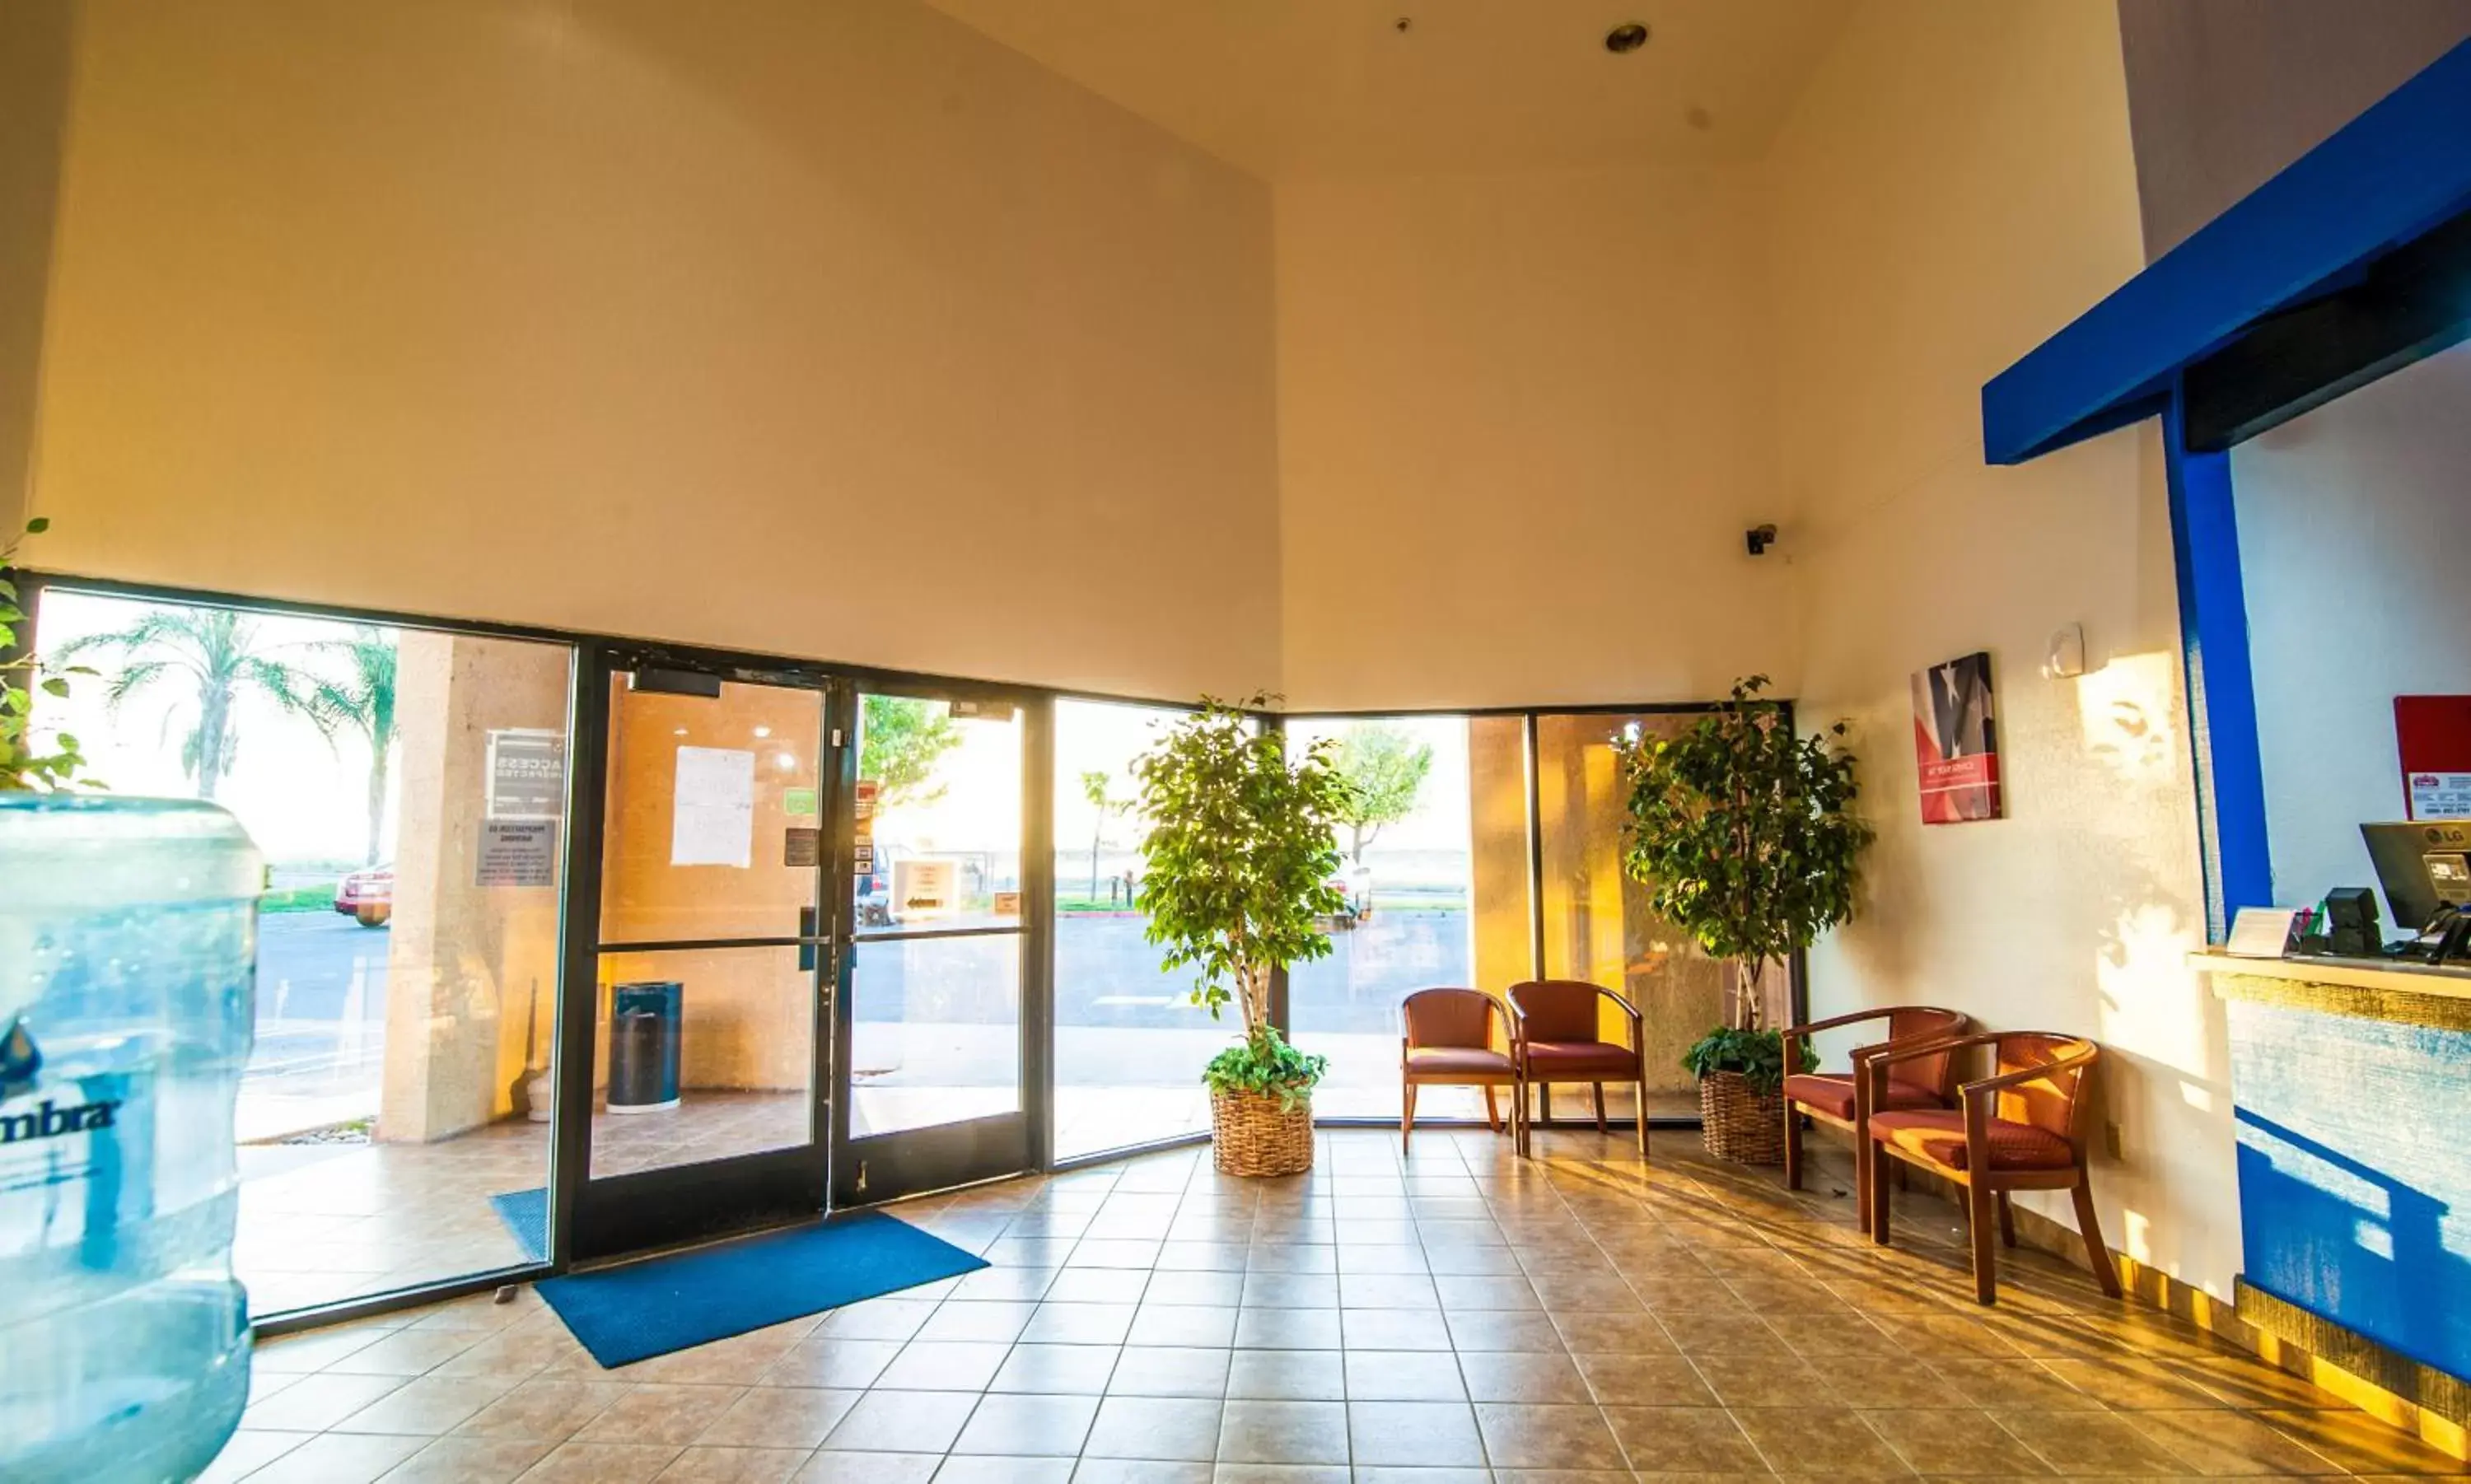 Lobby or reception in Motel 6-Santa Nella, CA - Los Banos